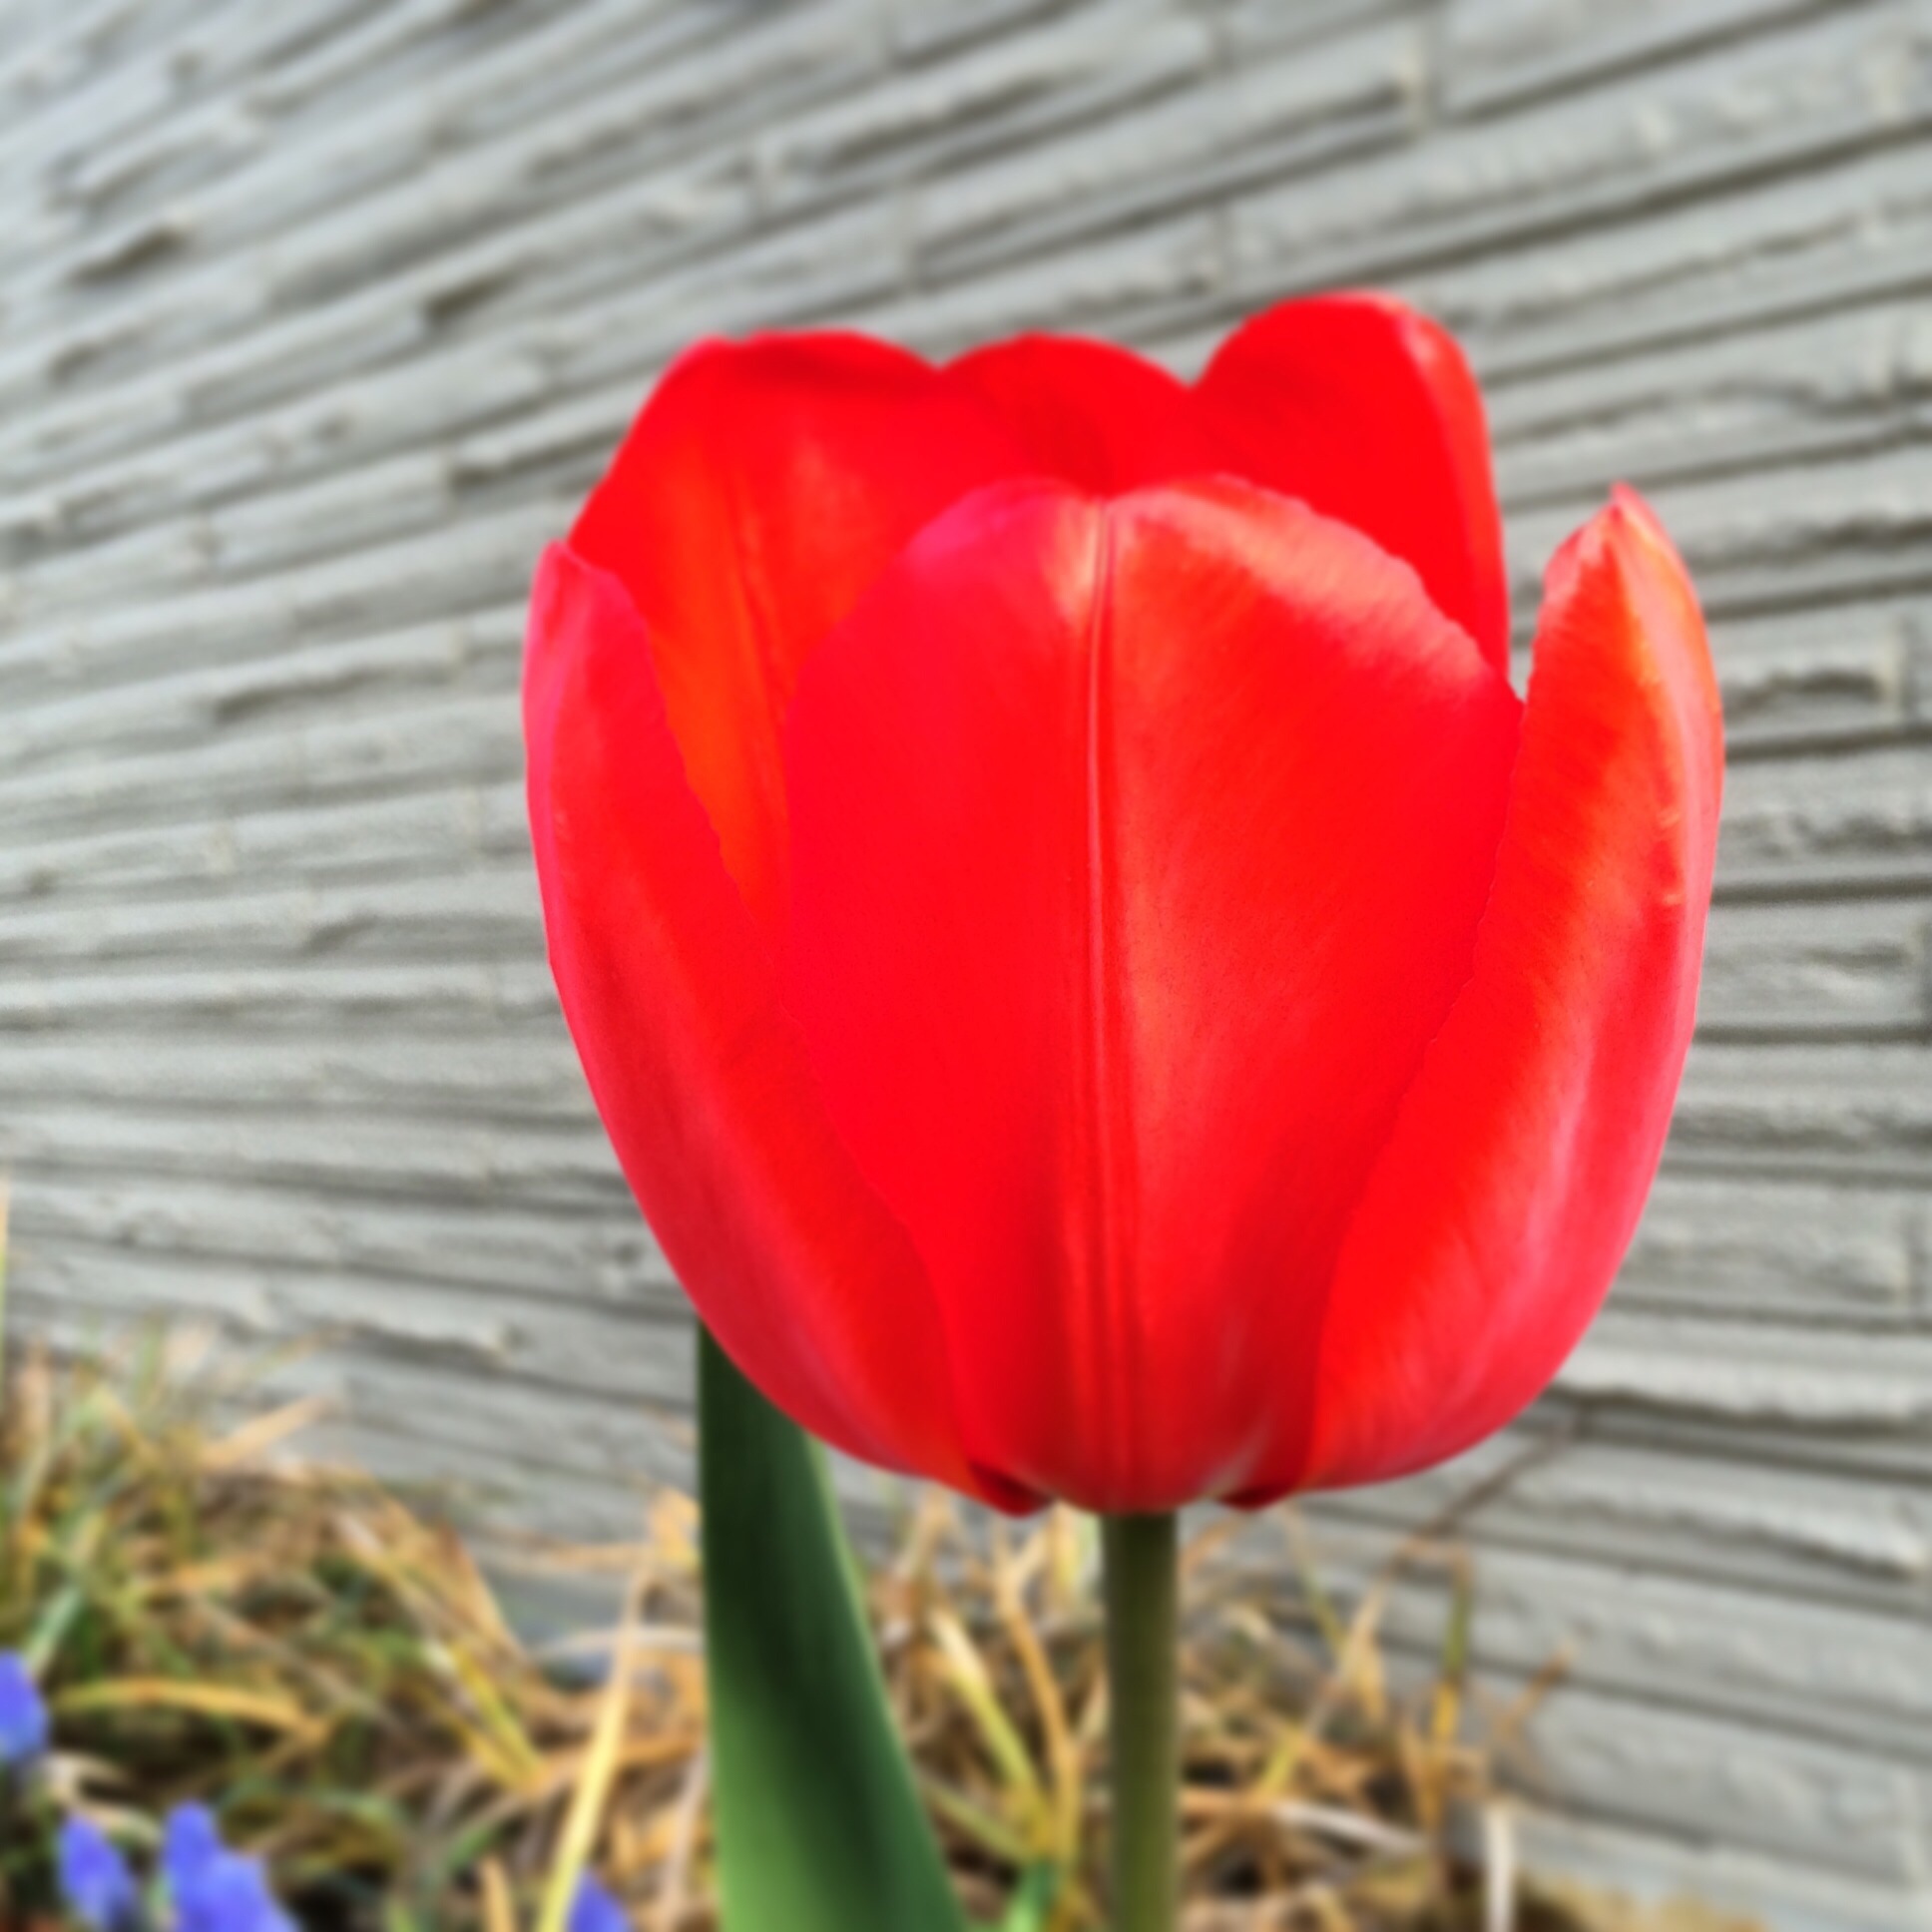 Red tulip against grey brick.